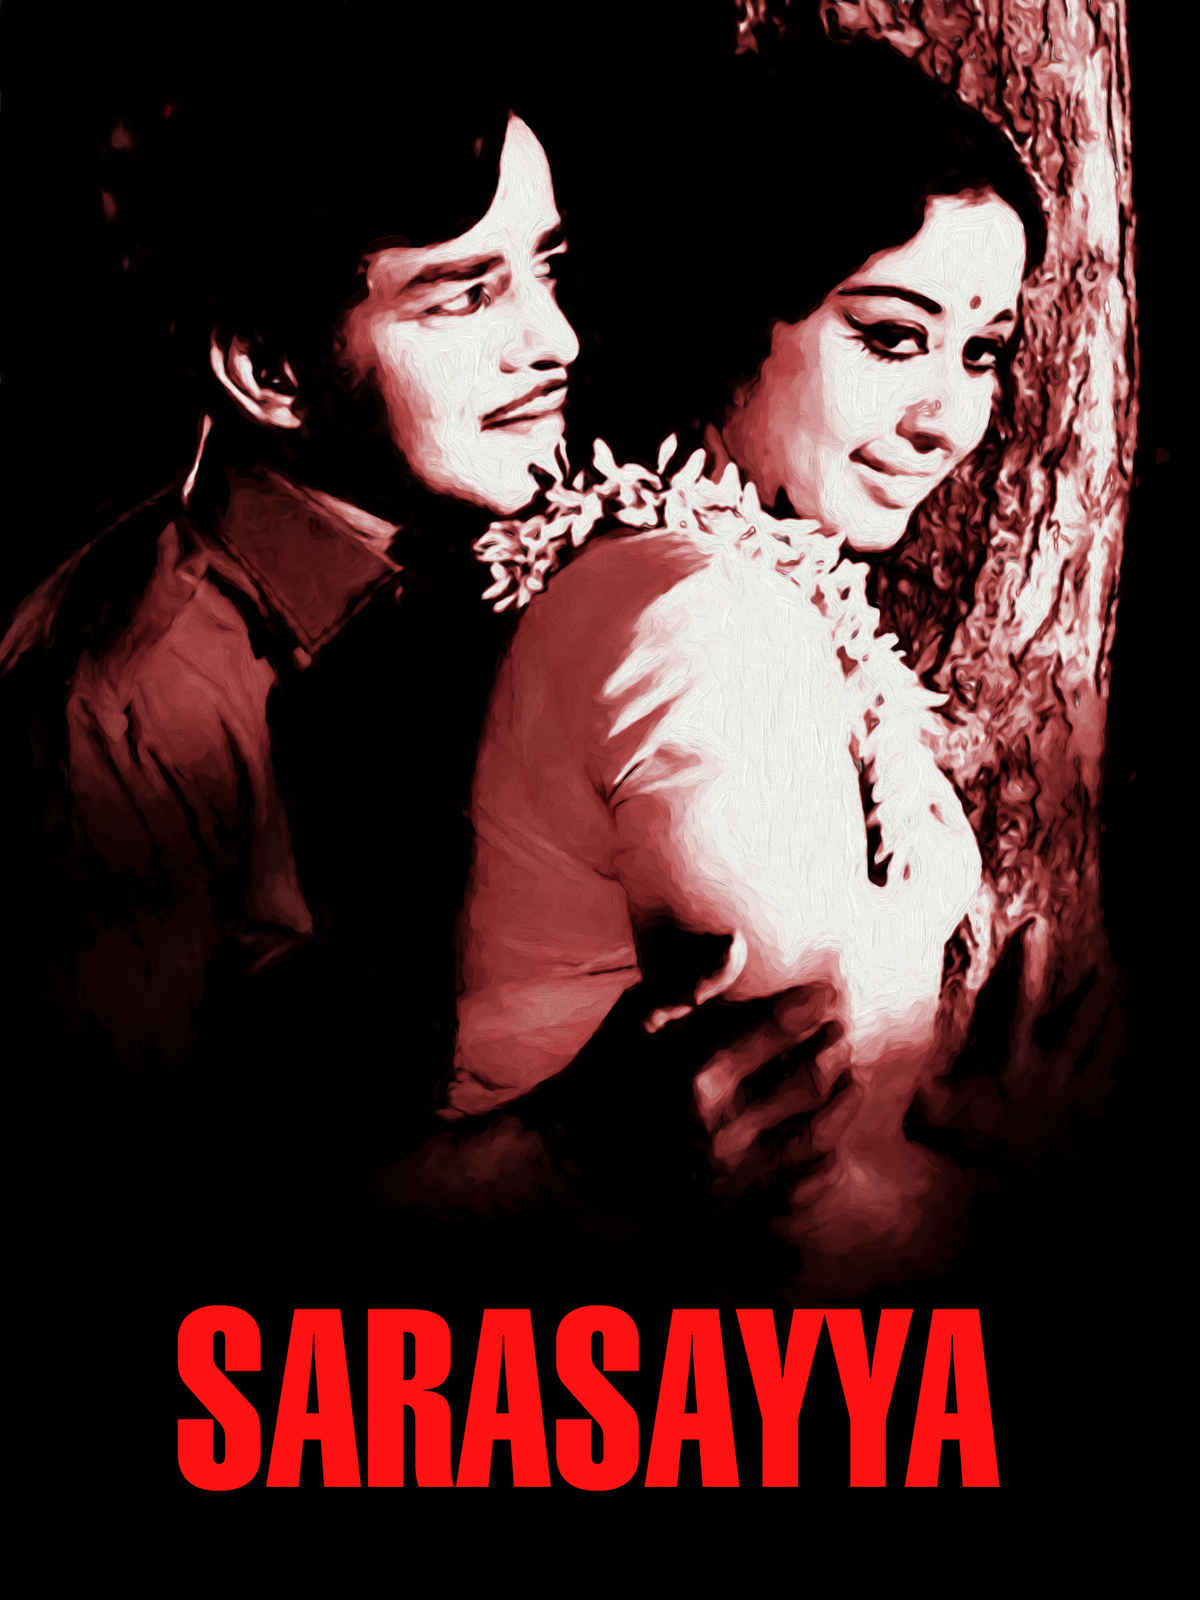 Sarasayya